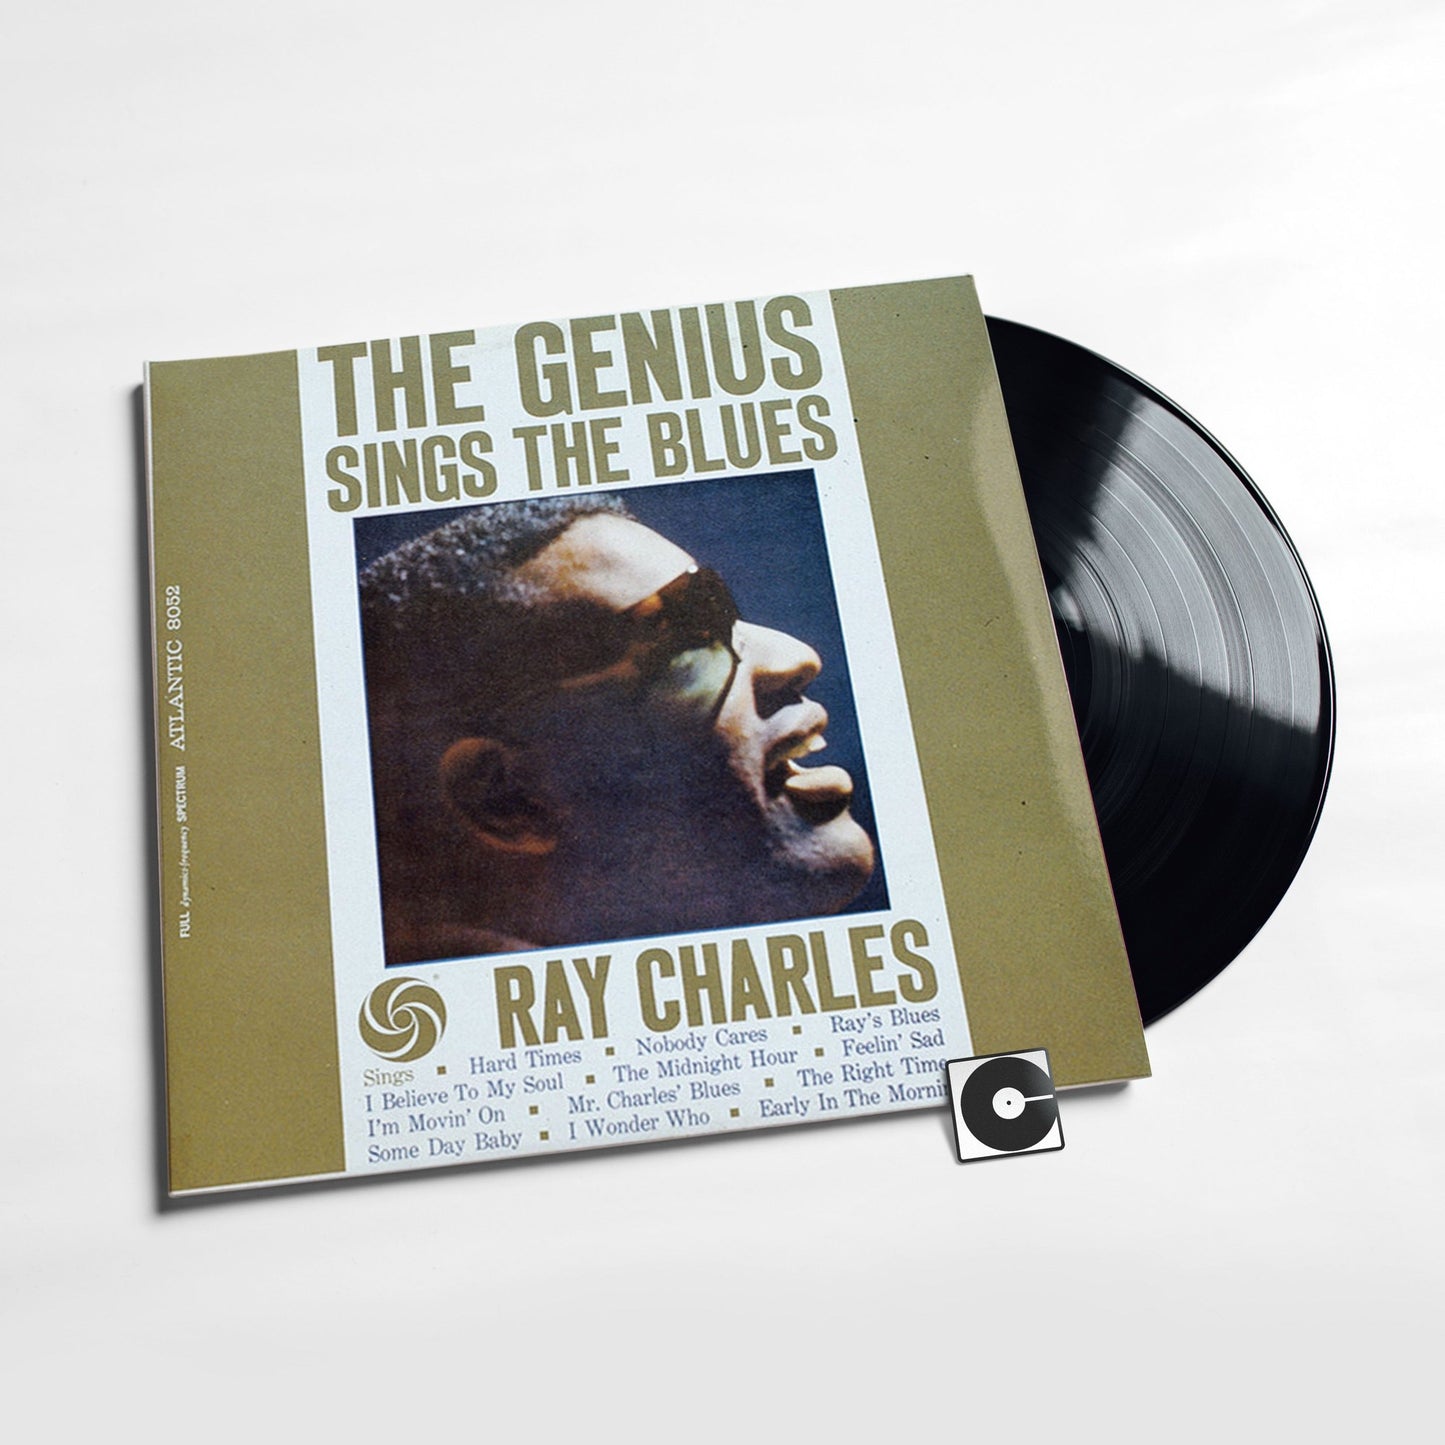 Ray Charles - "Genius Sings The Blues" Indie Exclusive